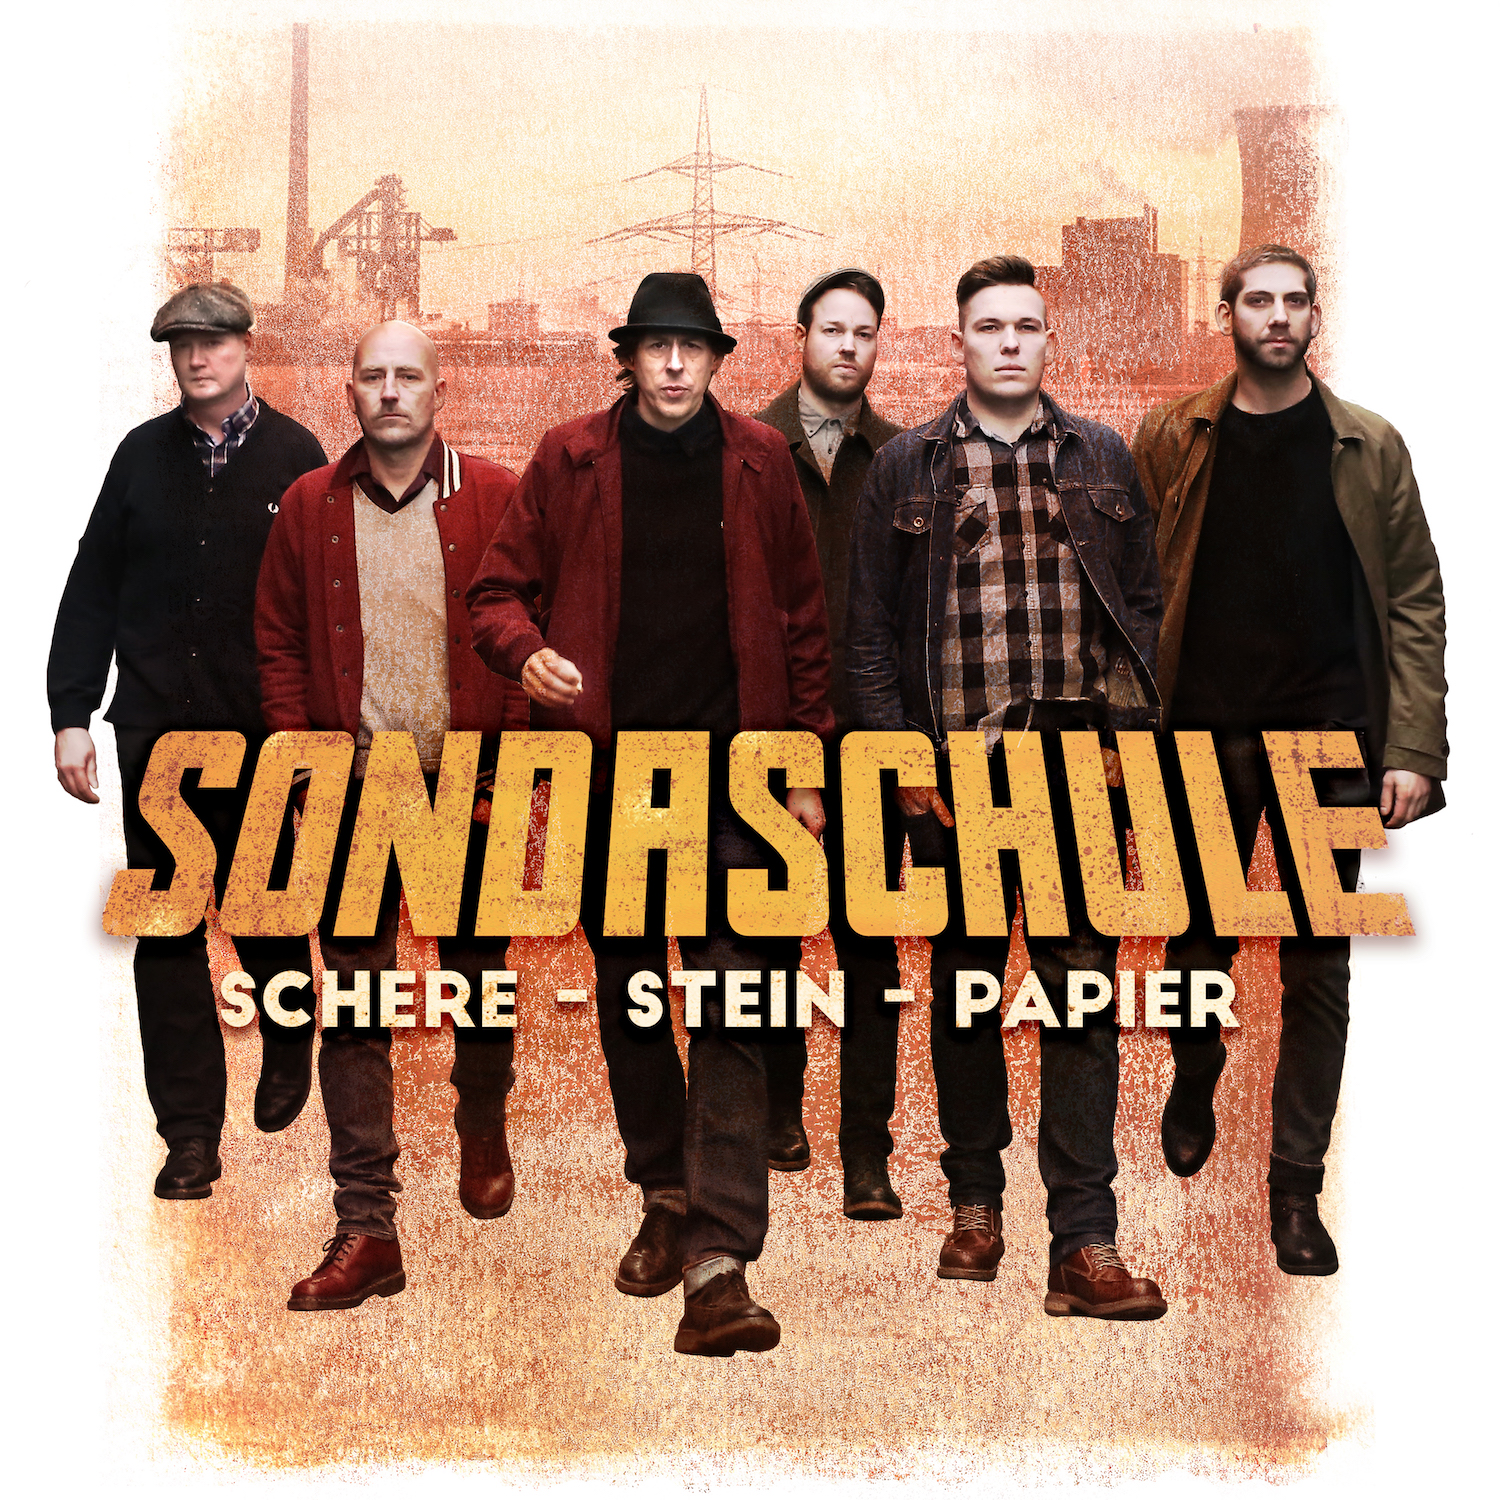 Sondaschule_Schere_Stein_Papier_Albumcover_1500